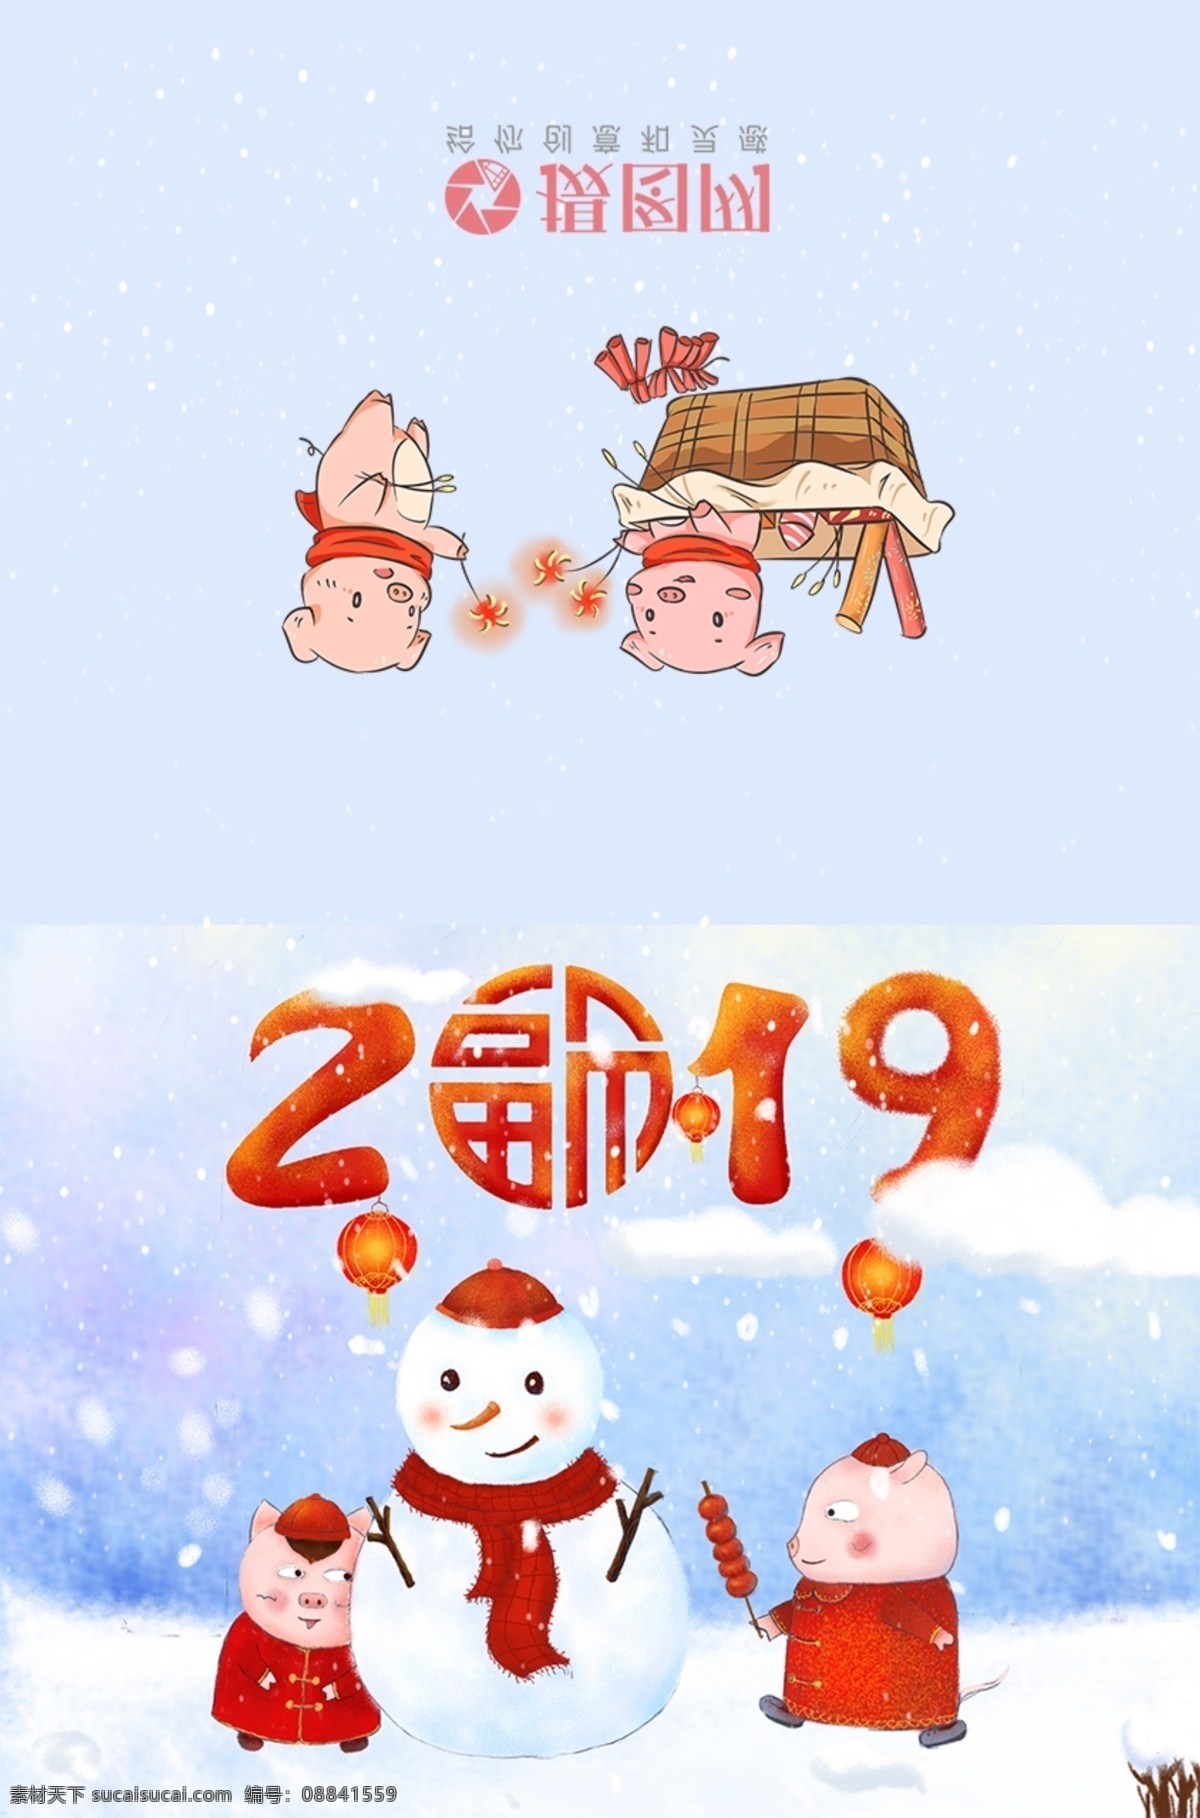 新春祝福贺卡 猪年 新年 新春贺卡 贺卡 贺卡设计 设计模板 新春 春节 2019 新年贺卡